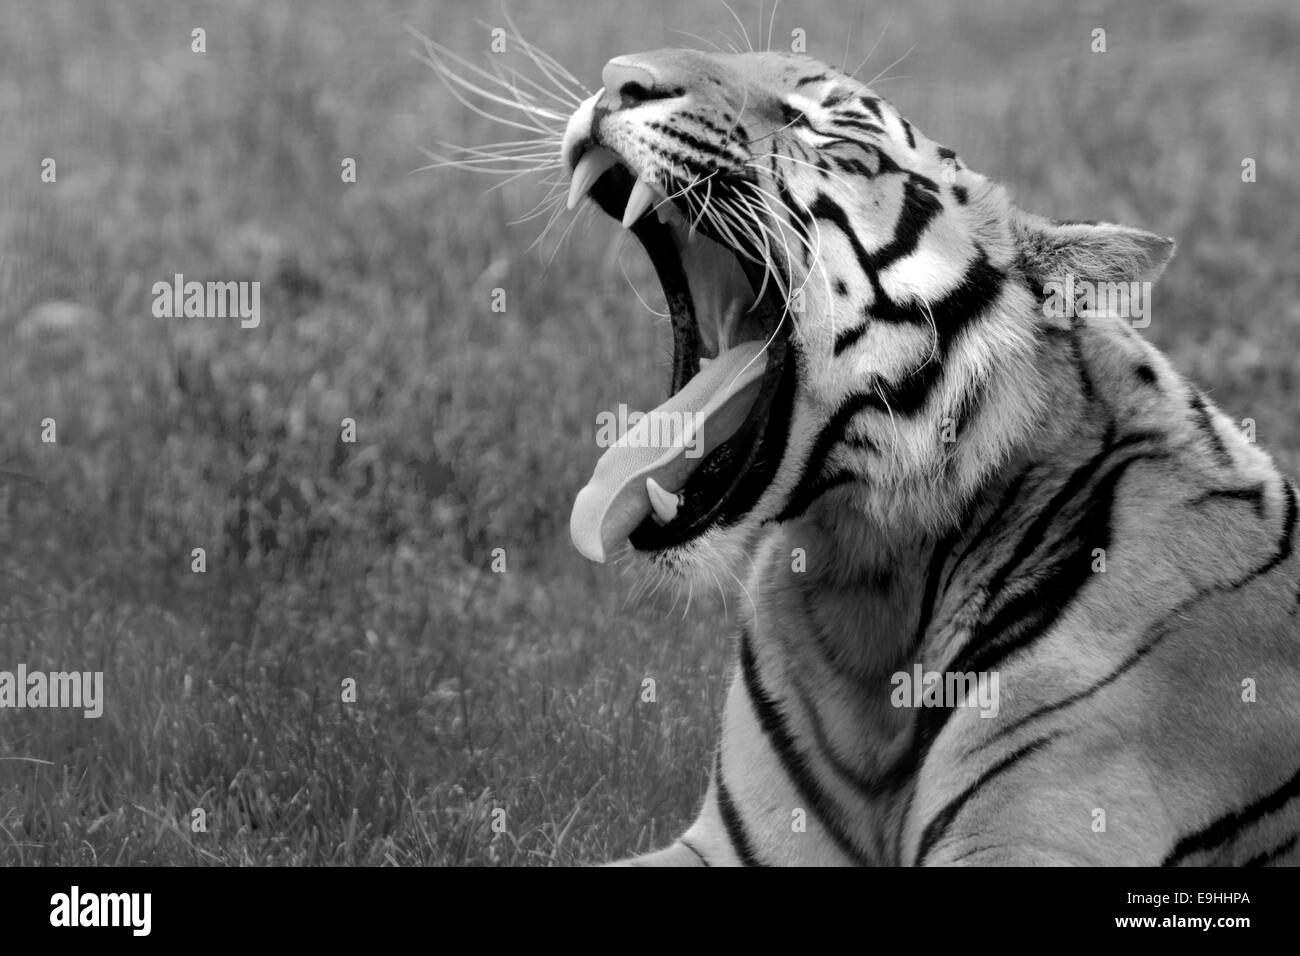 Tiger sbadigliare solo dopo aver terminato il suo pranzo. Il tempo di riposo. Foto Stock